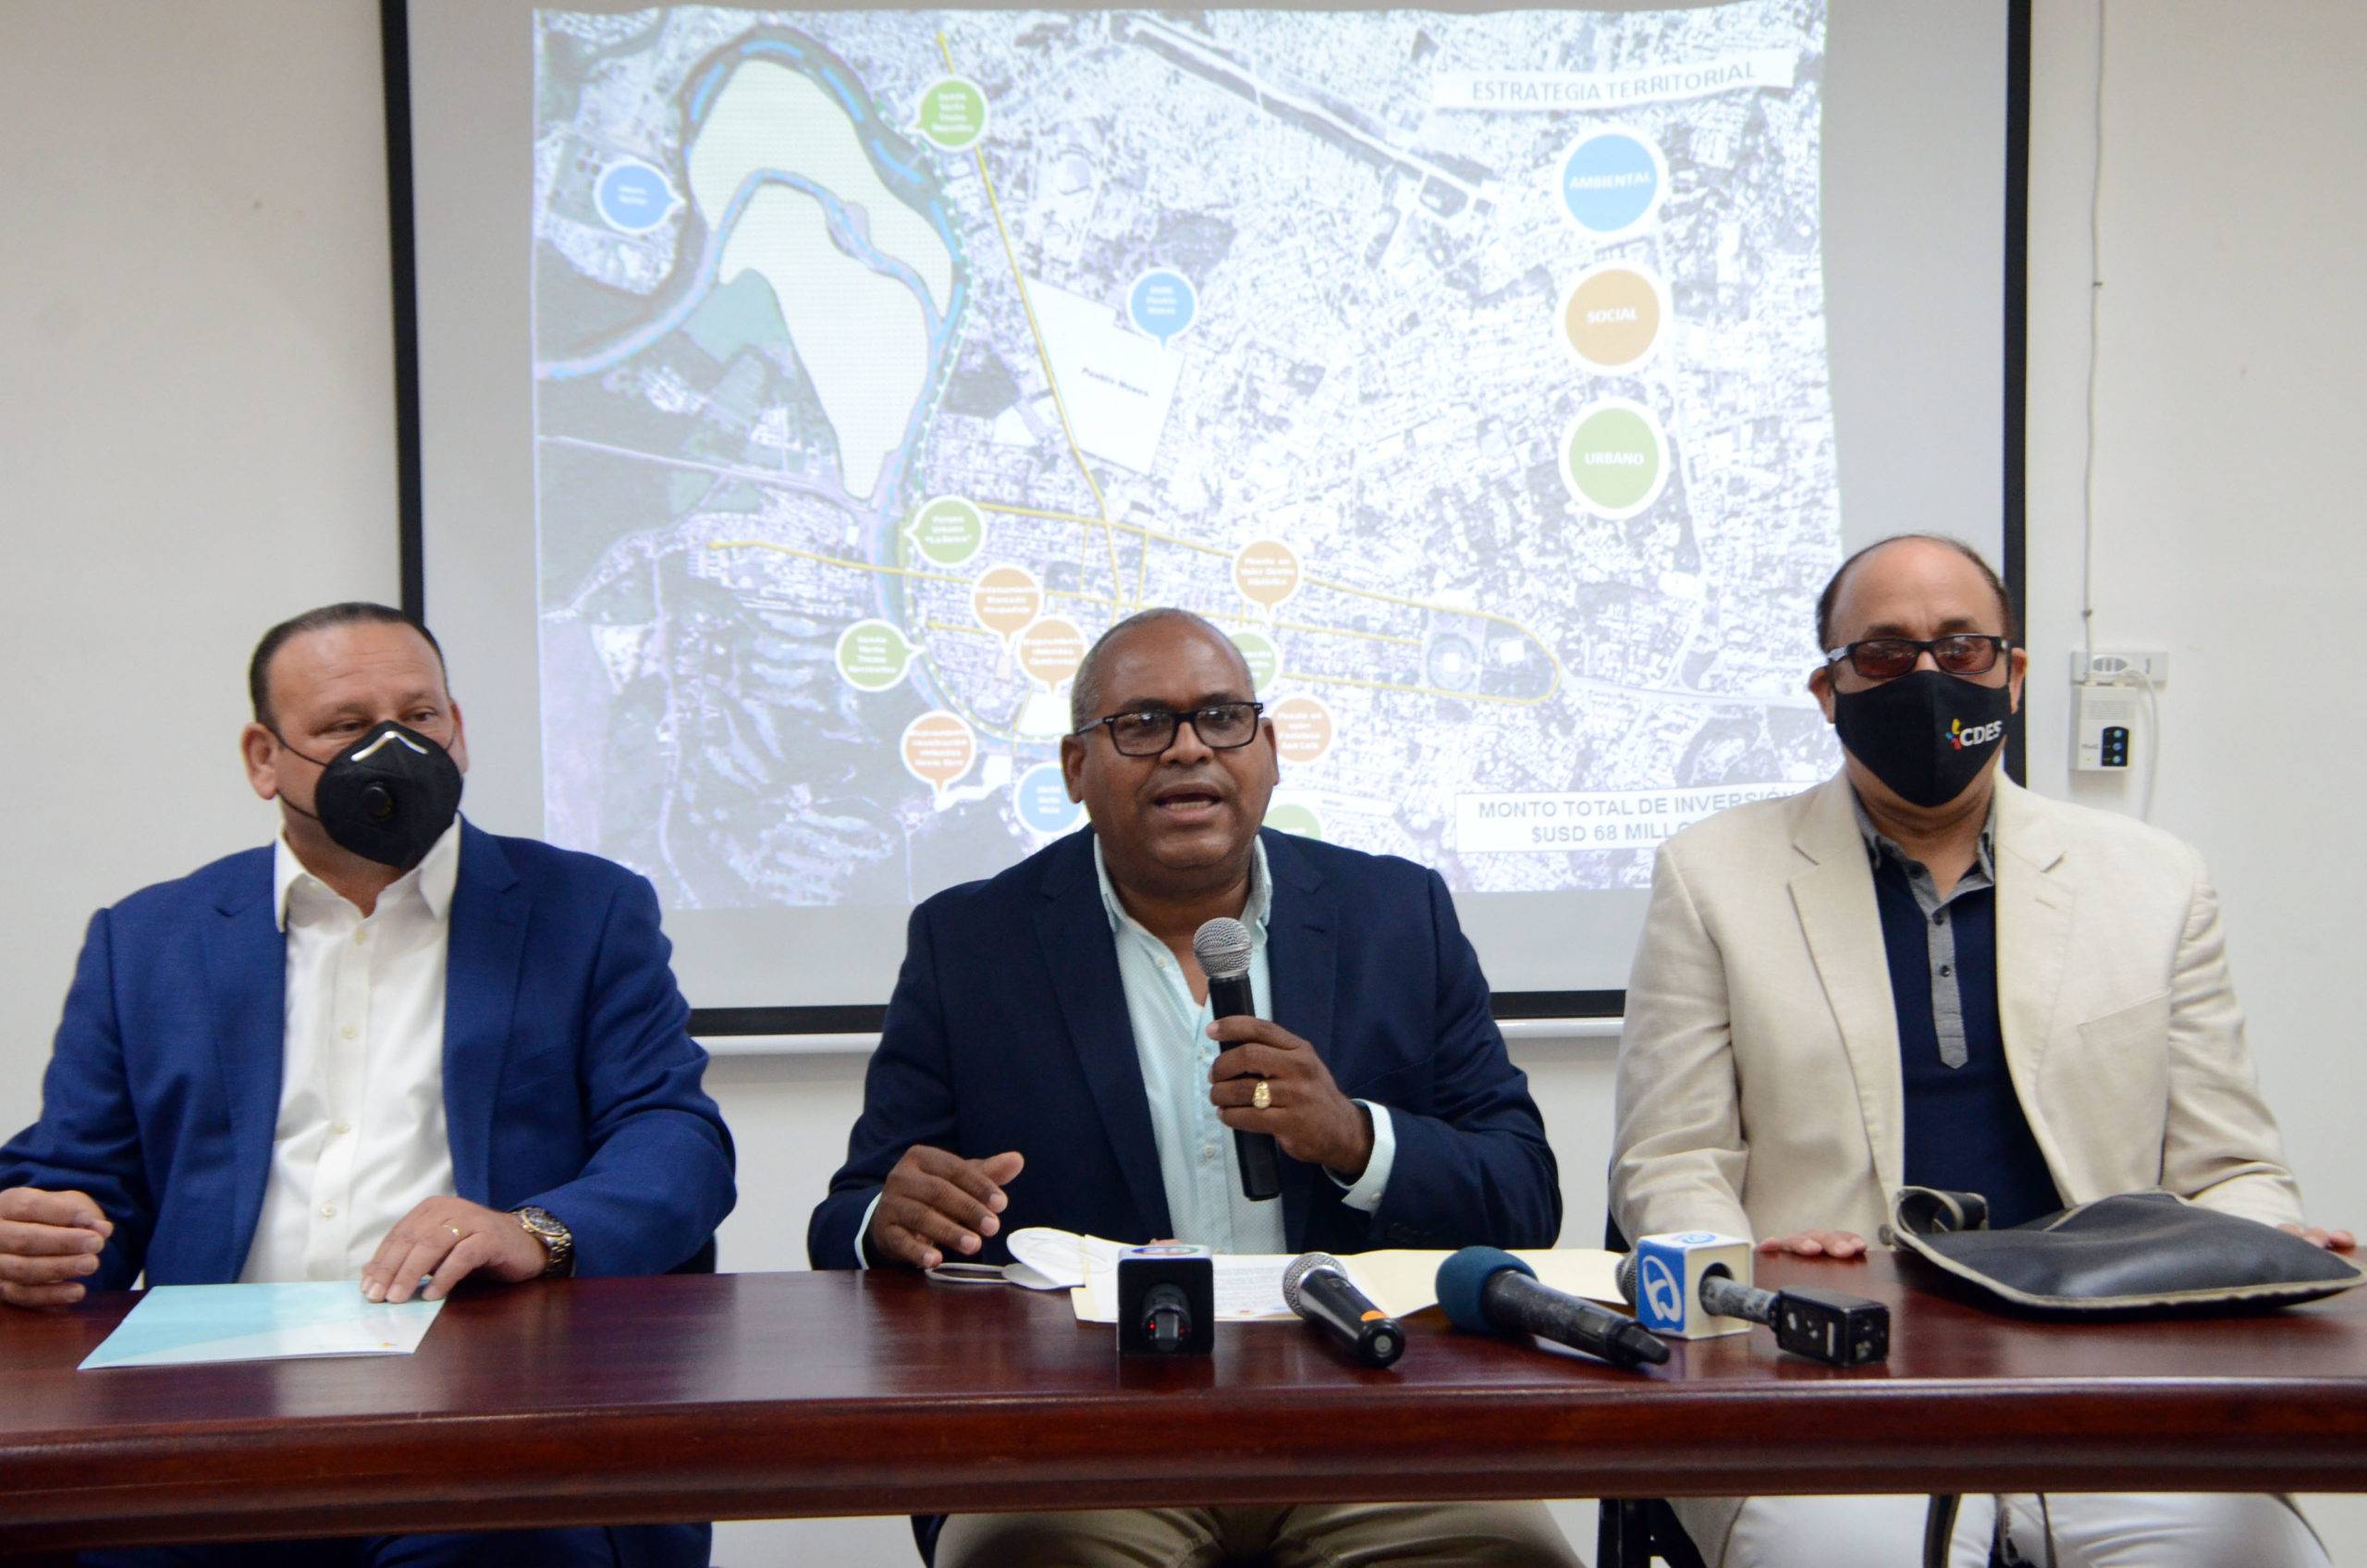 Consejo de Desarrollo Estratégico de Santiago y el CODIA impulsan proyecto urbano-ambiental